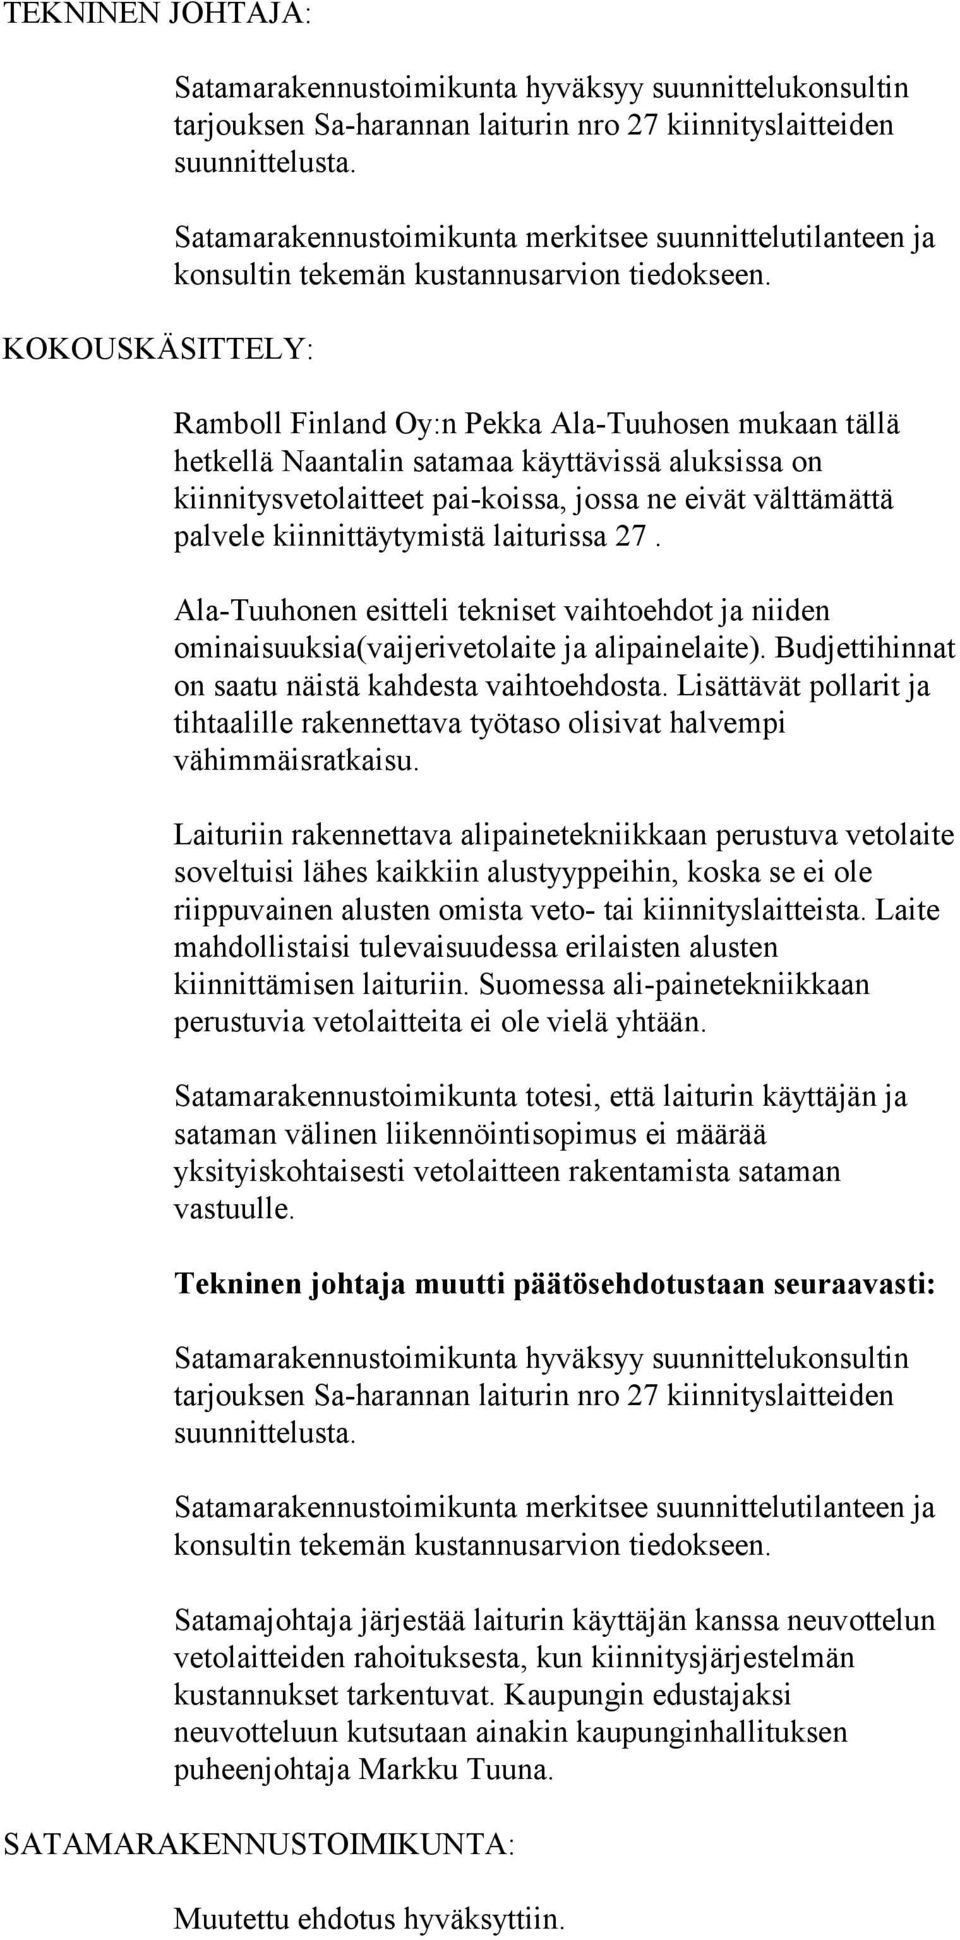 Ramboll Finland Oy:n Pekka Ala-Tuuhosen mukaan tällä hetkellä Naantalin satamaa käyttävissä aluksissa on kiinnitysvetolaitteet pai-koissa, jossa ne eivät välttämättä palvele kiinnittäytymistä